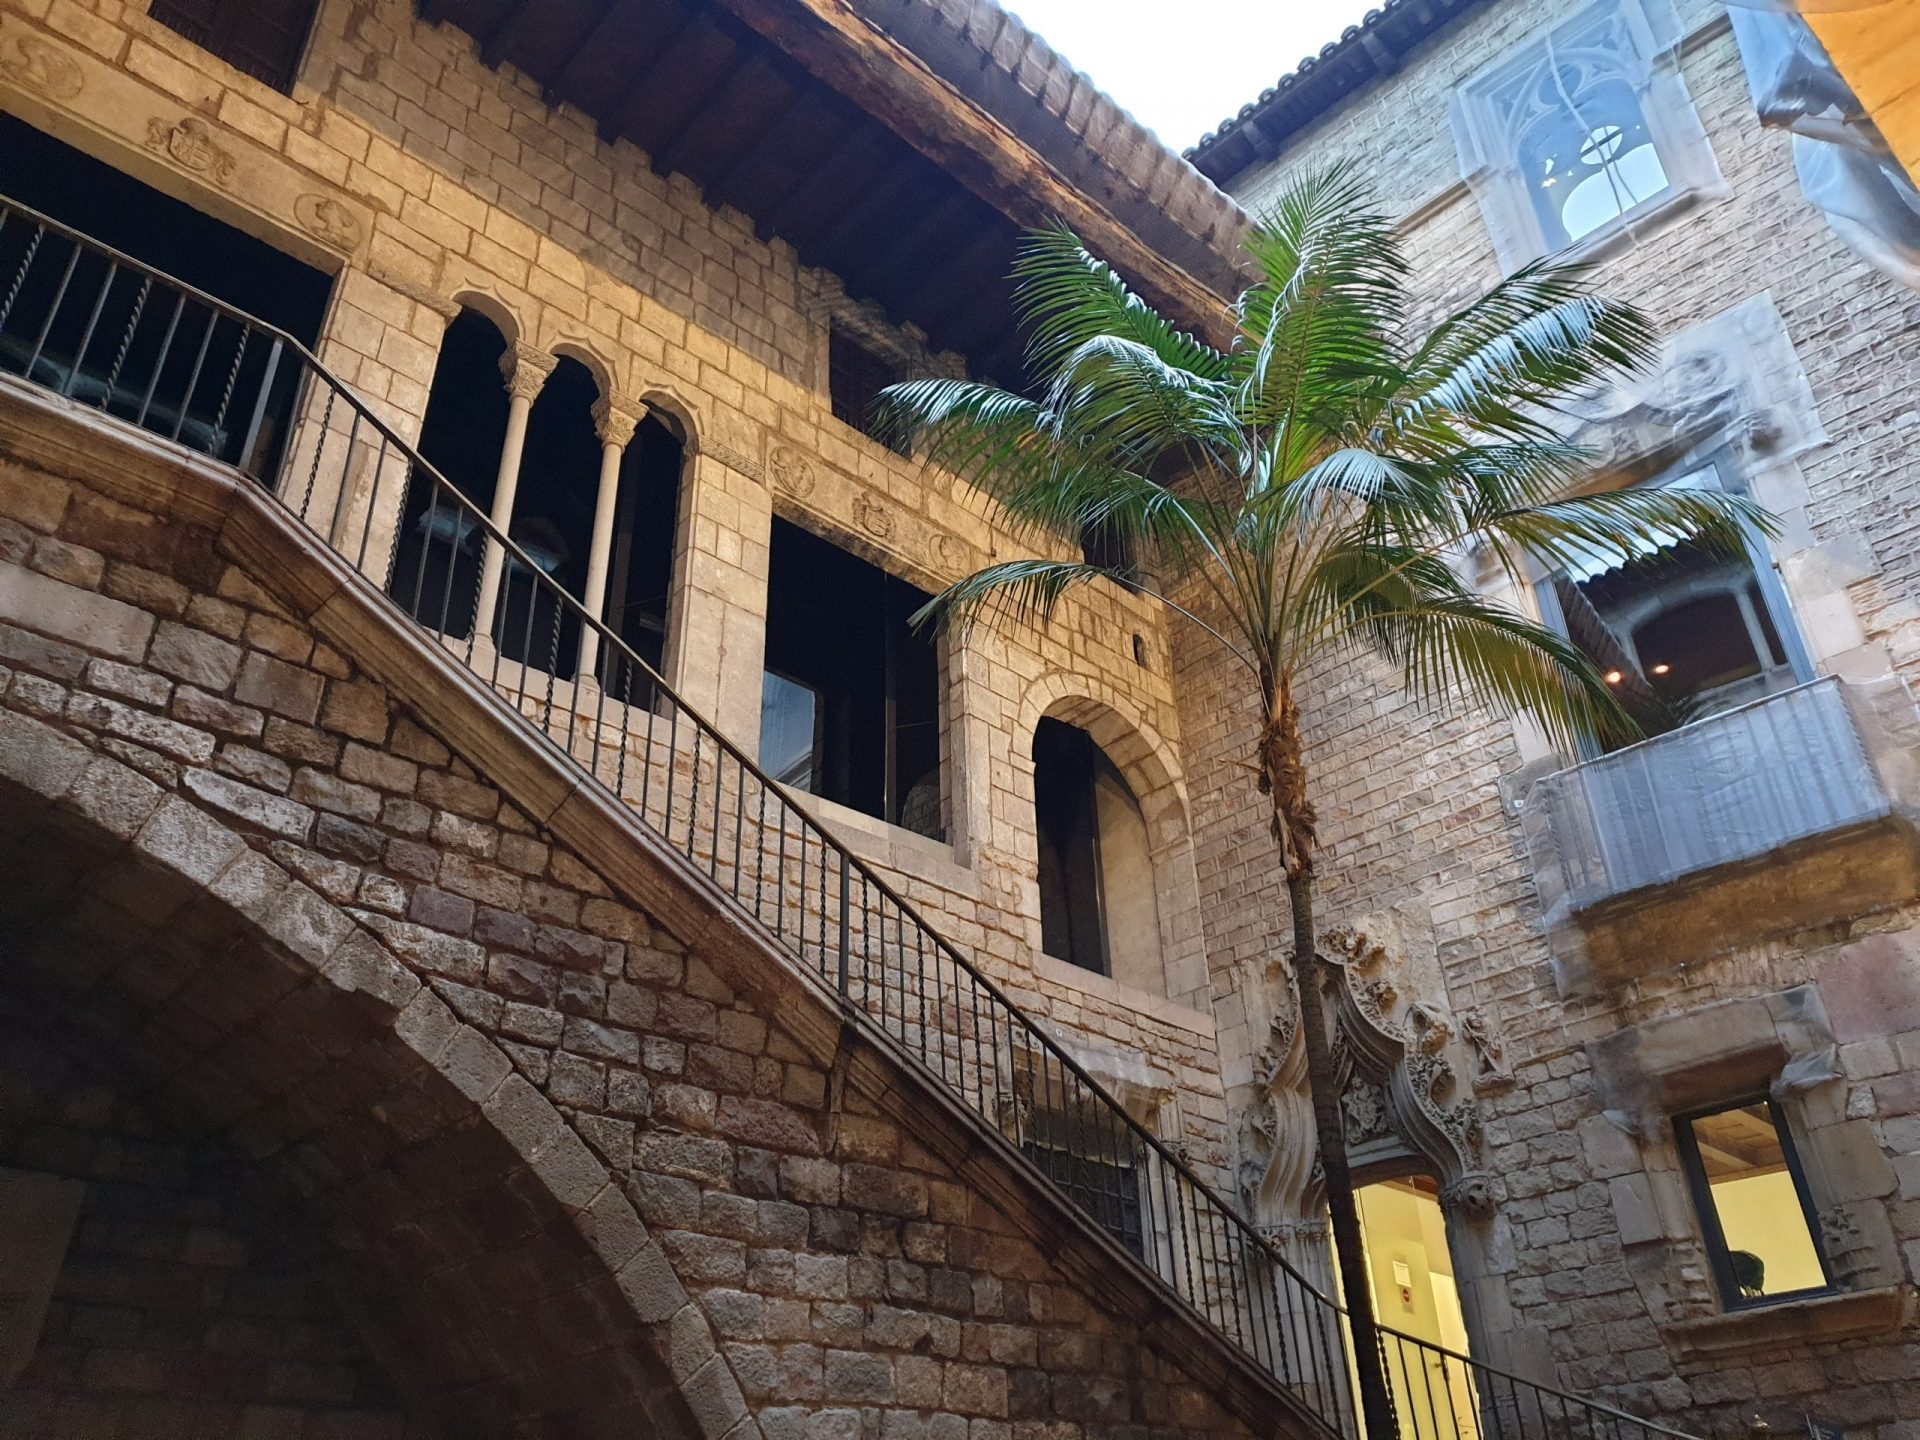 La cour d'un palais médiéval est l'entrée du musée Picasso à Barcelone.